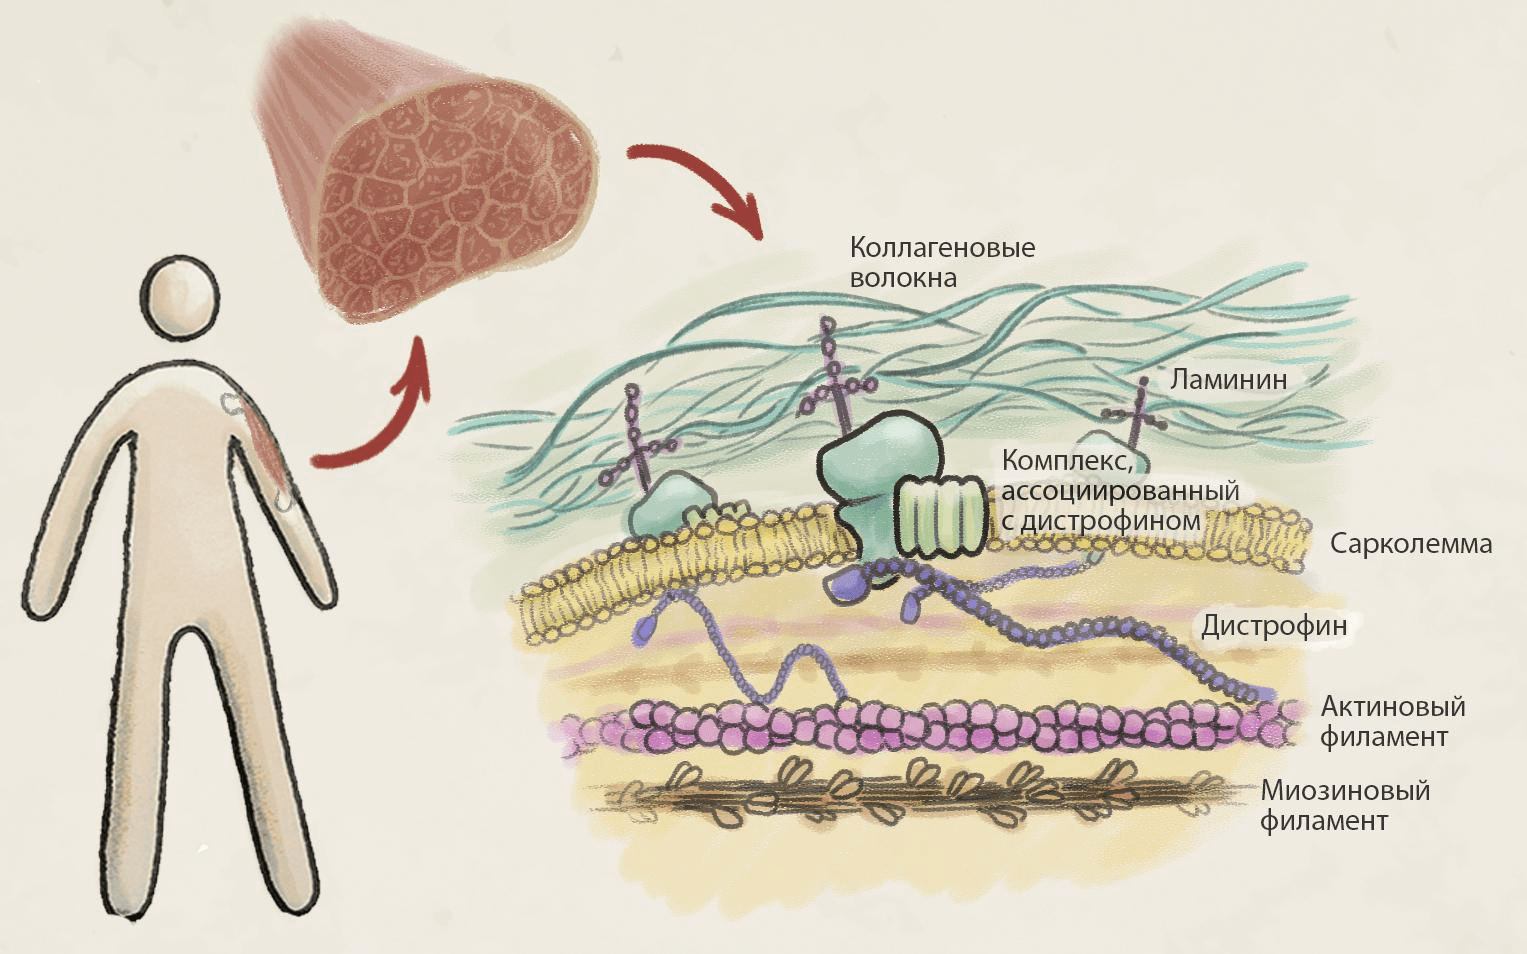 Роль дистрофина в патогенезе МДД